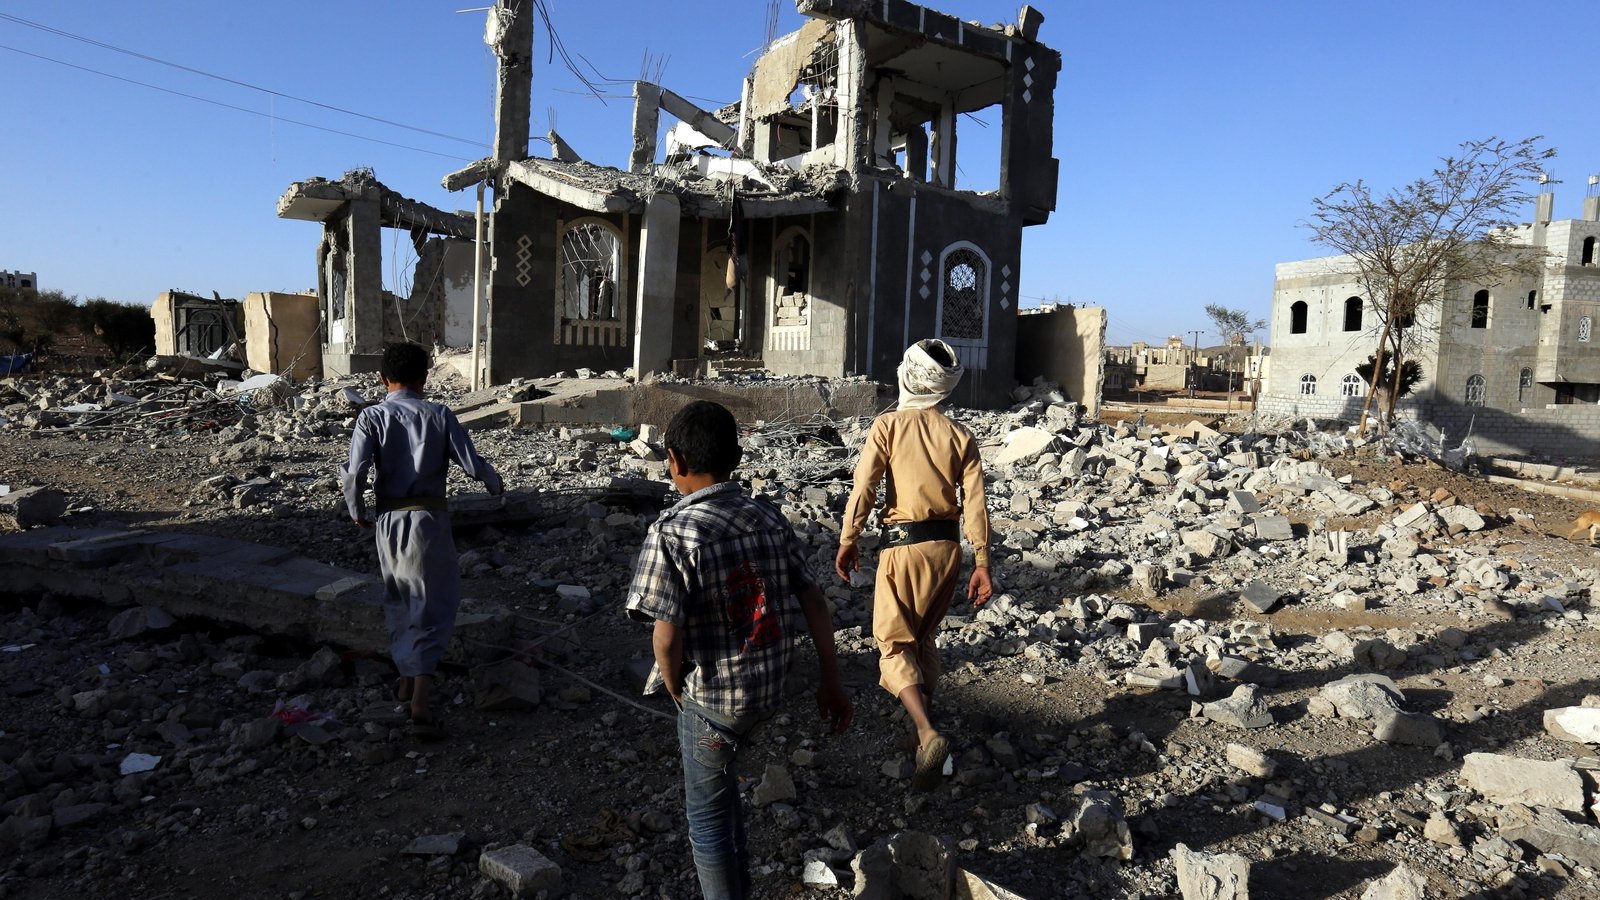 essay about war in yemen